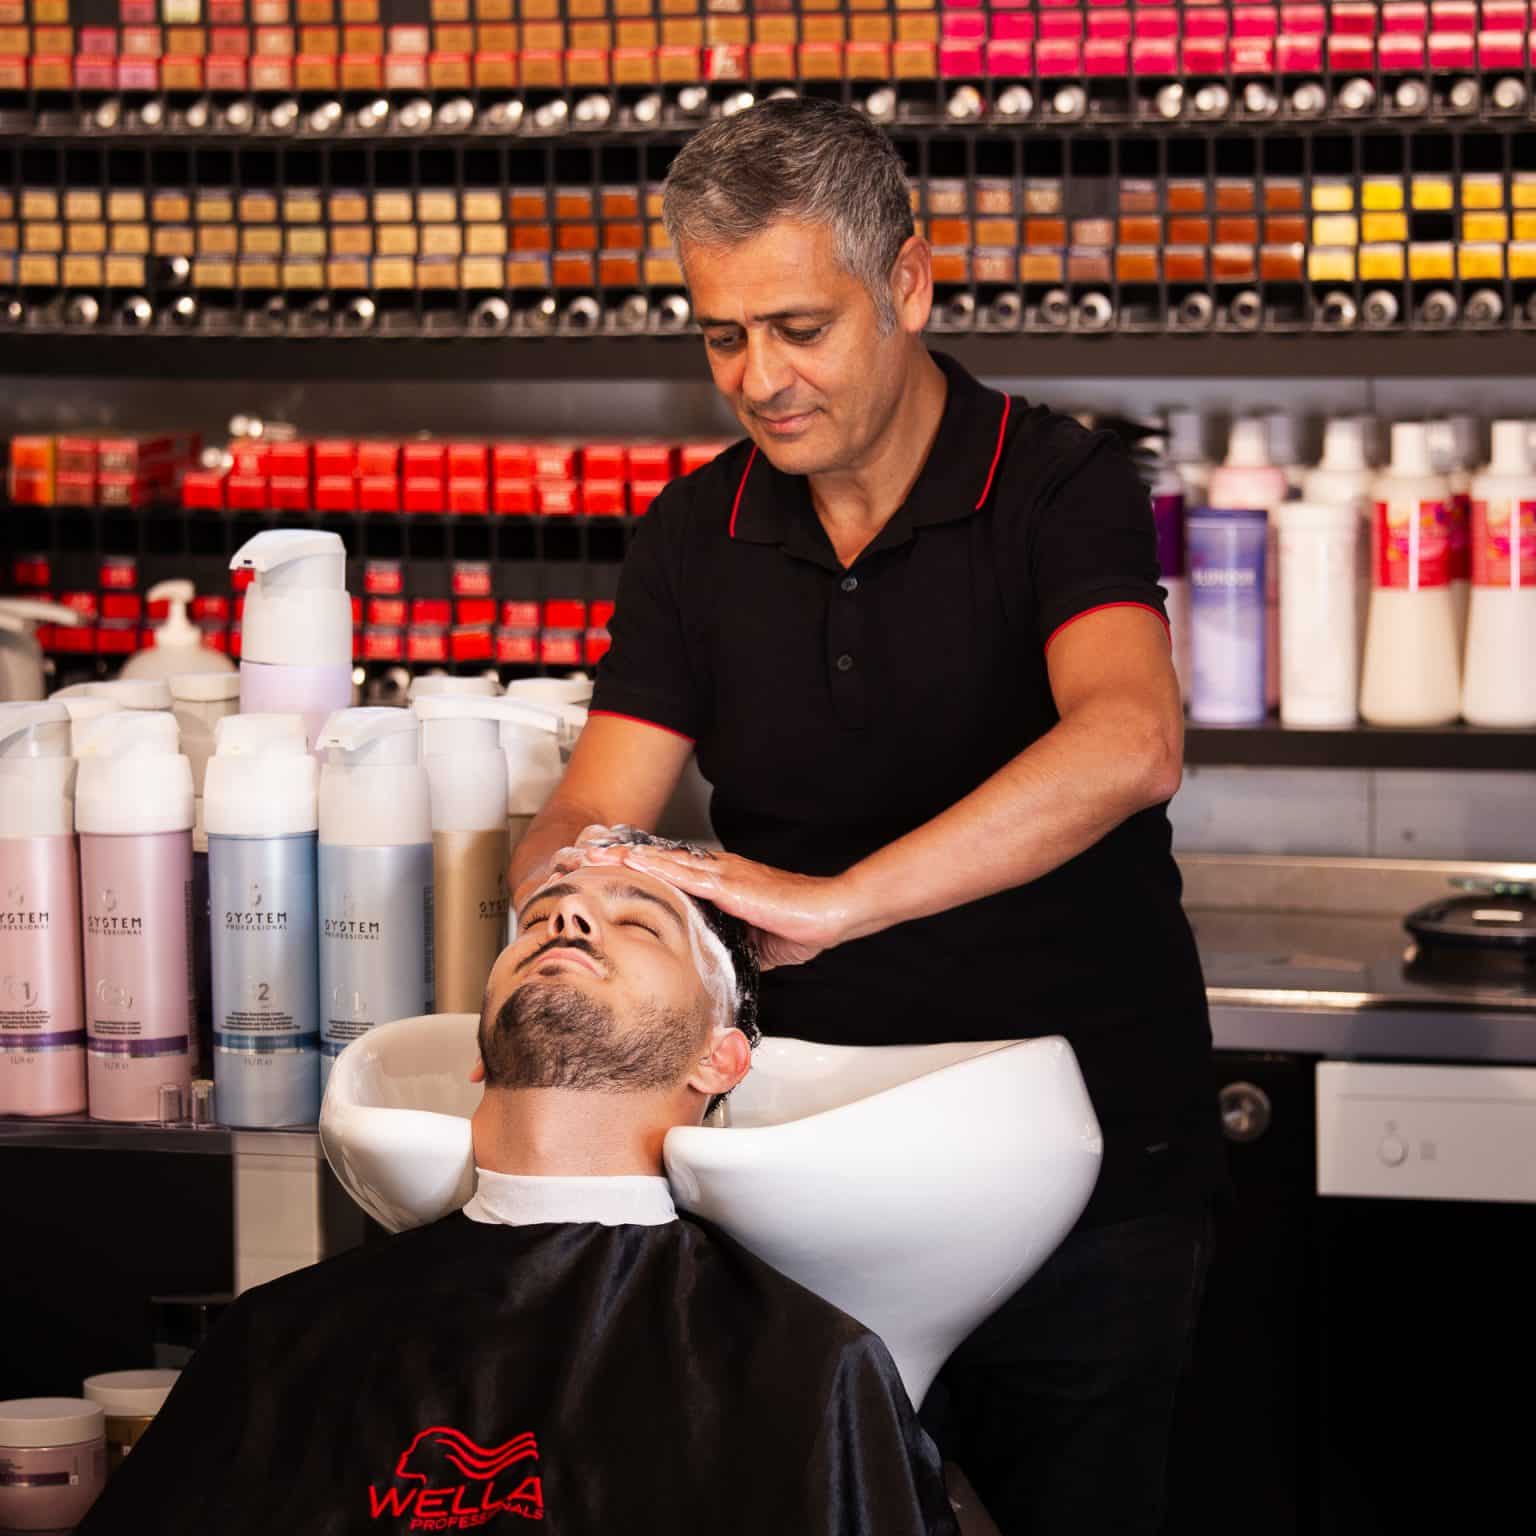 La Saner Detmold Friseur mit Kunden am Haare waschen